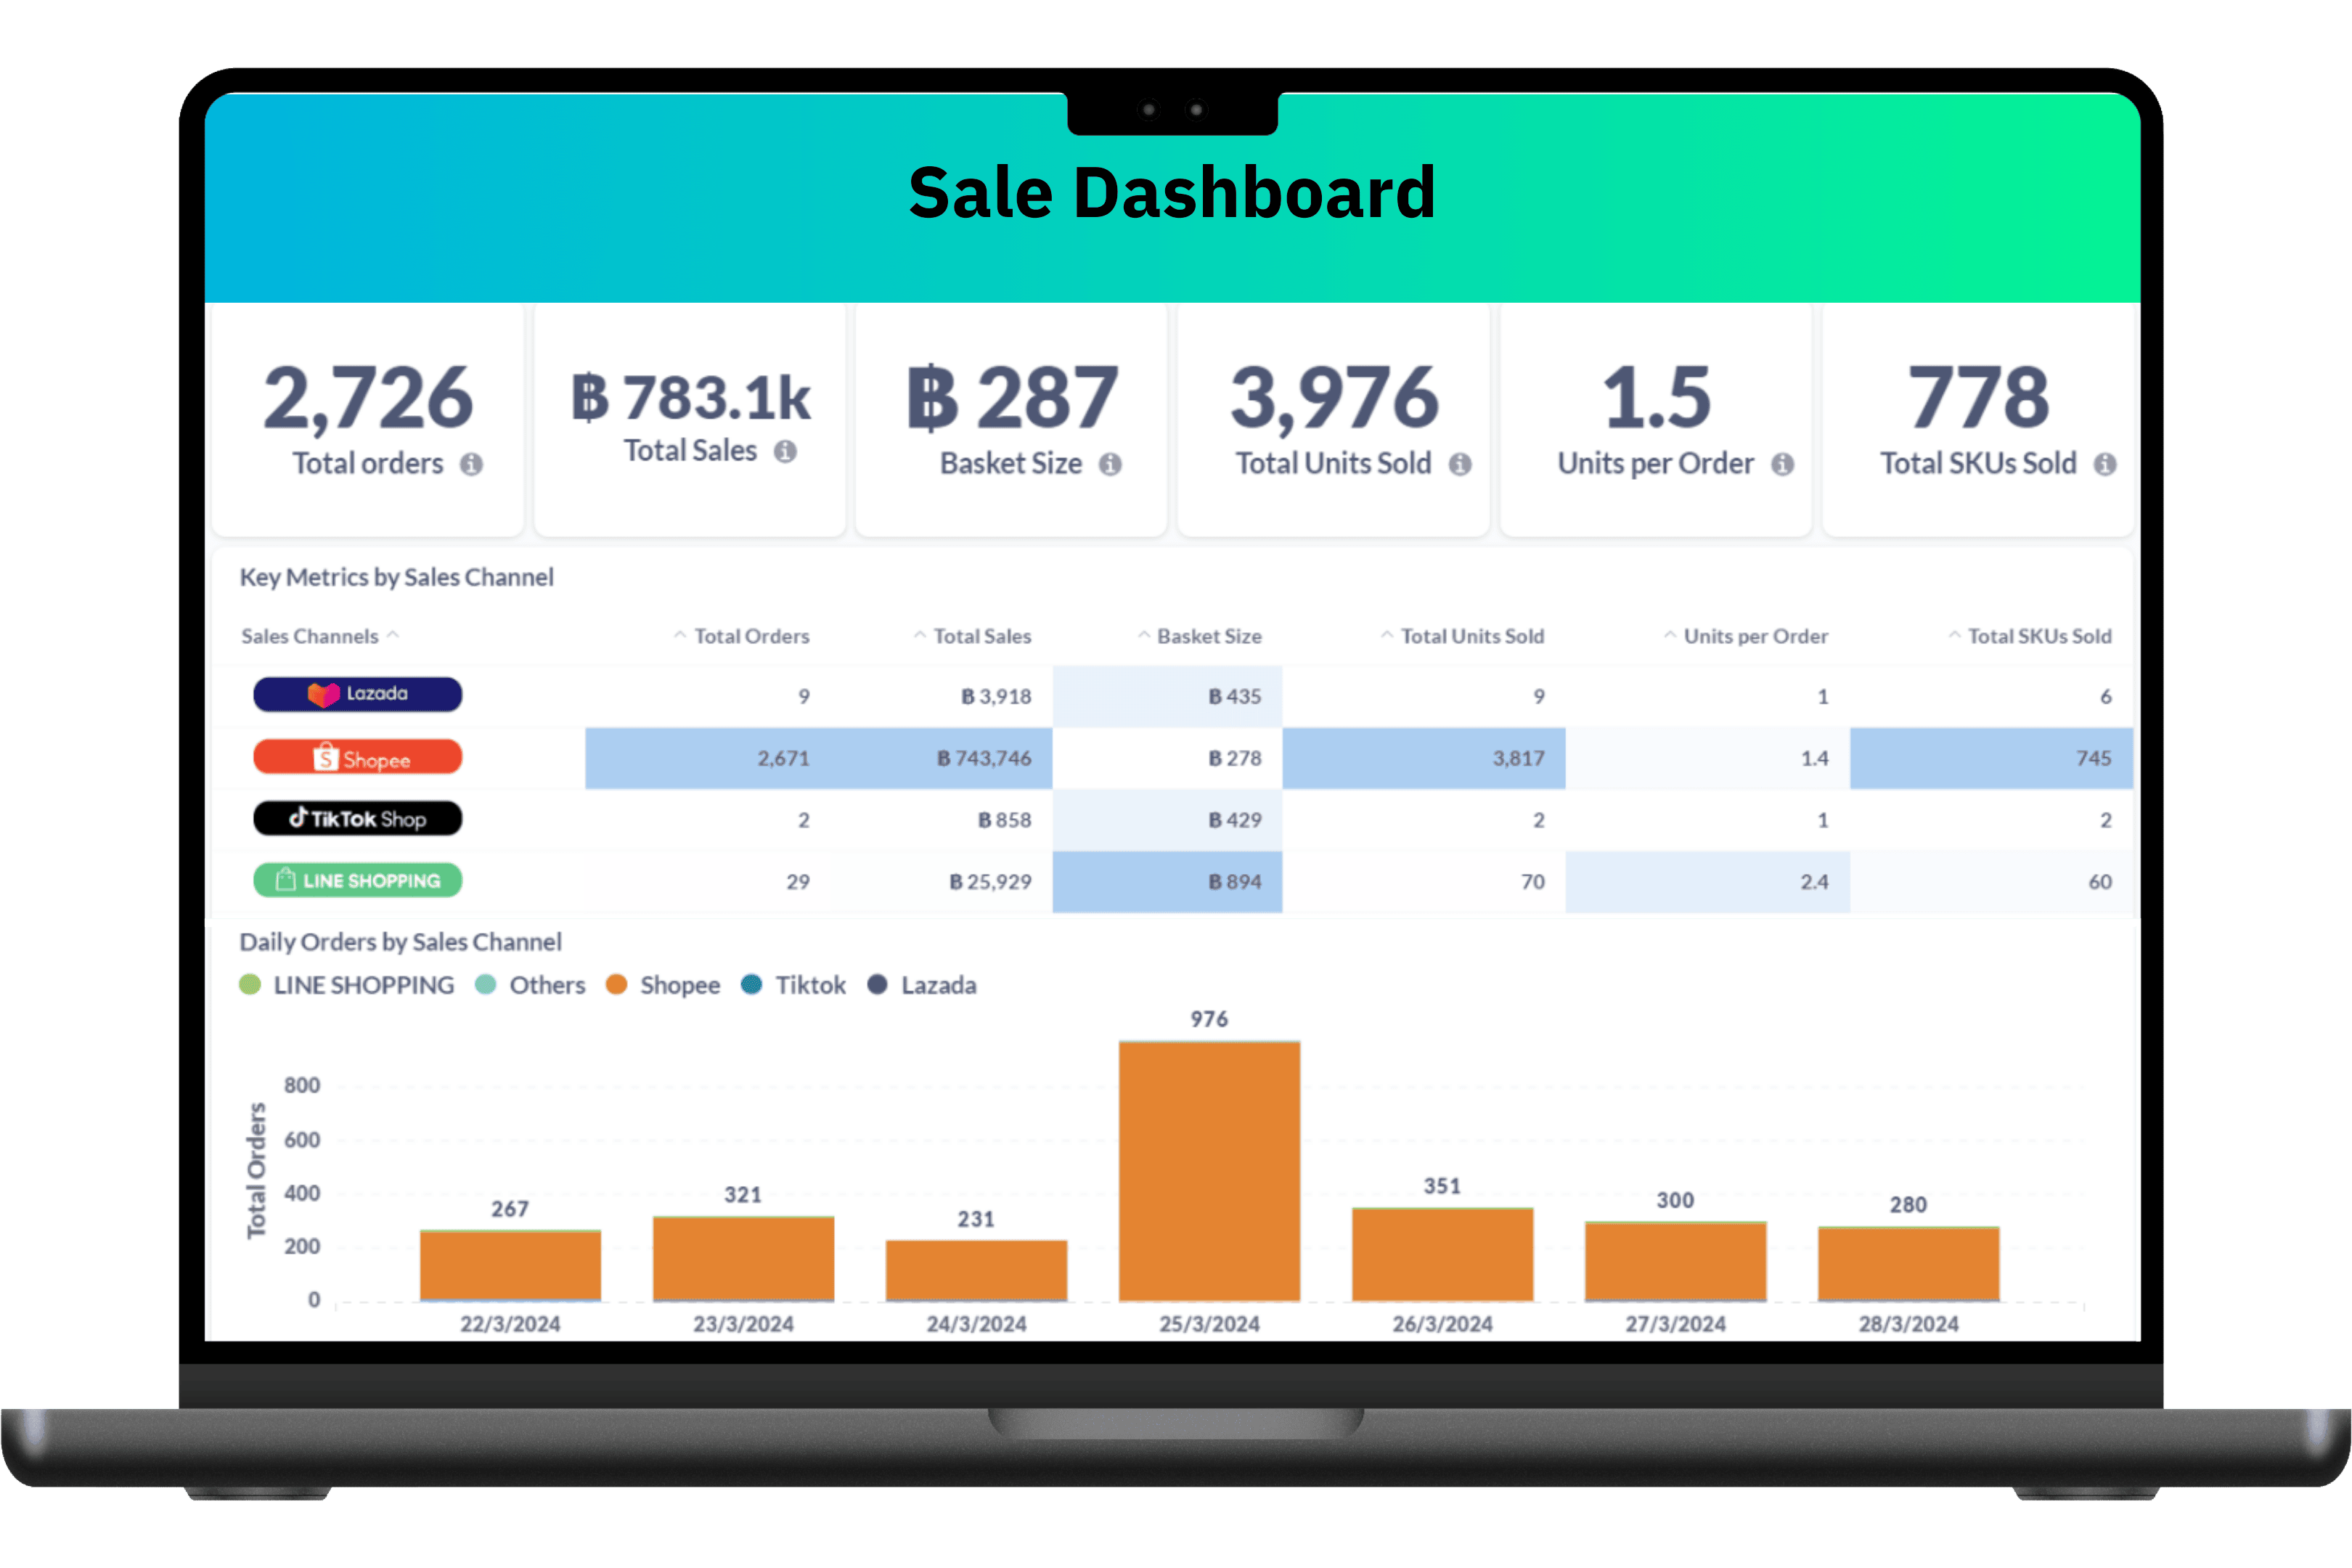 รูปสื่อถึง Reporting & Dashboard ของ MyCloud ที่ช่วยสรุป ข้อมูลตัวเลขต่างๆ ที่จะมีส่วนช่วยให้ลูกค้าสามารวางแผนหรือต่อยอดการขายได้